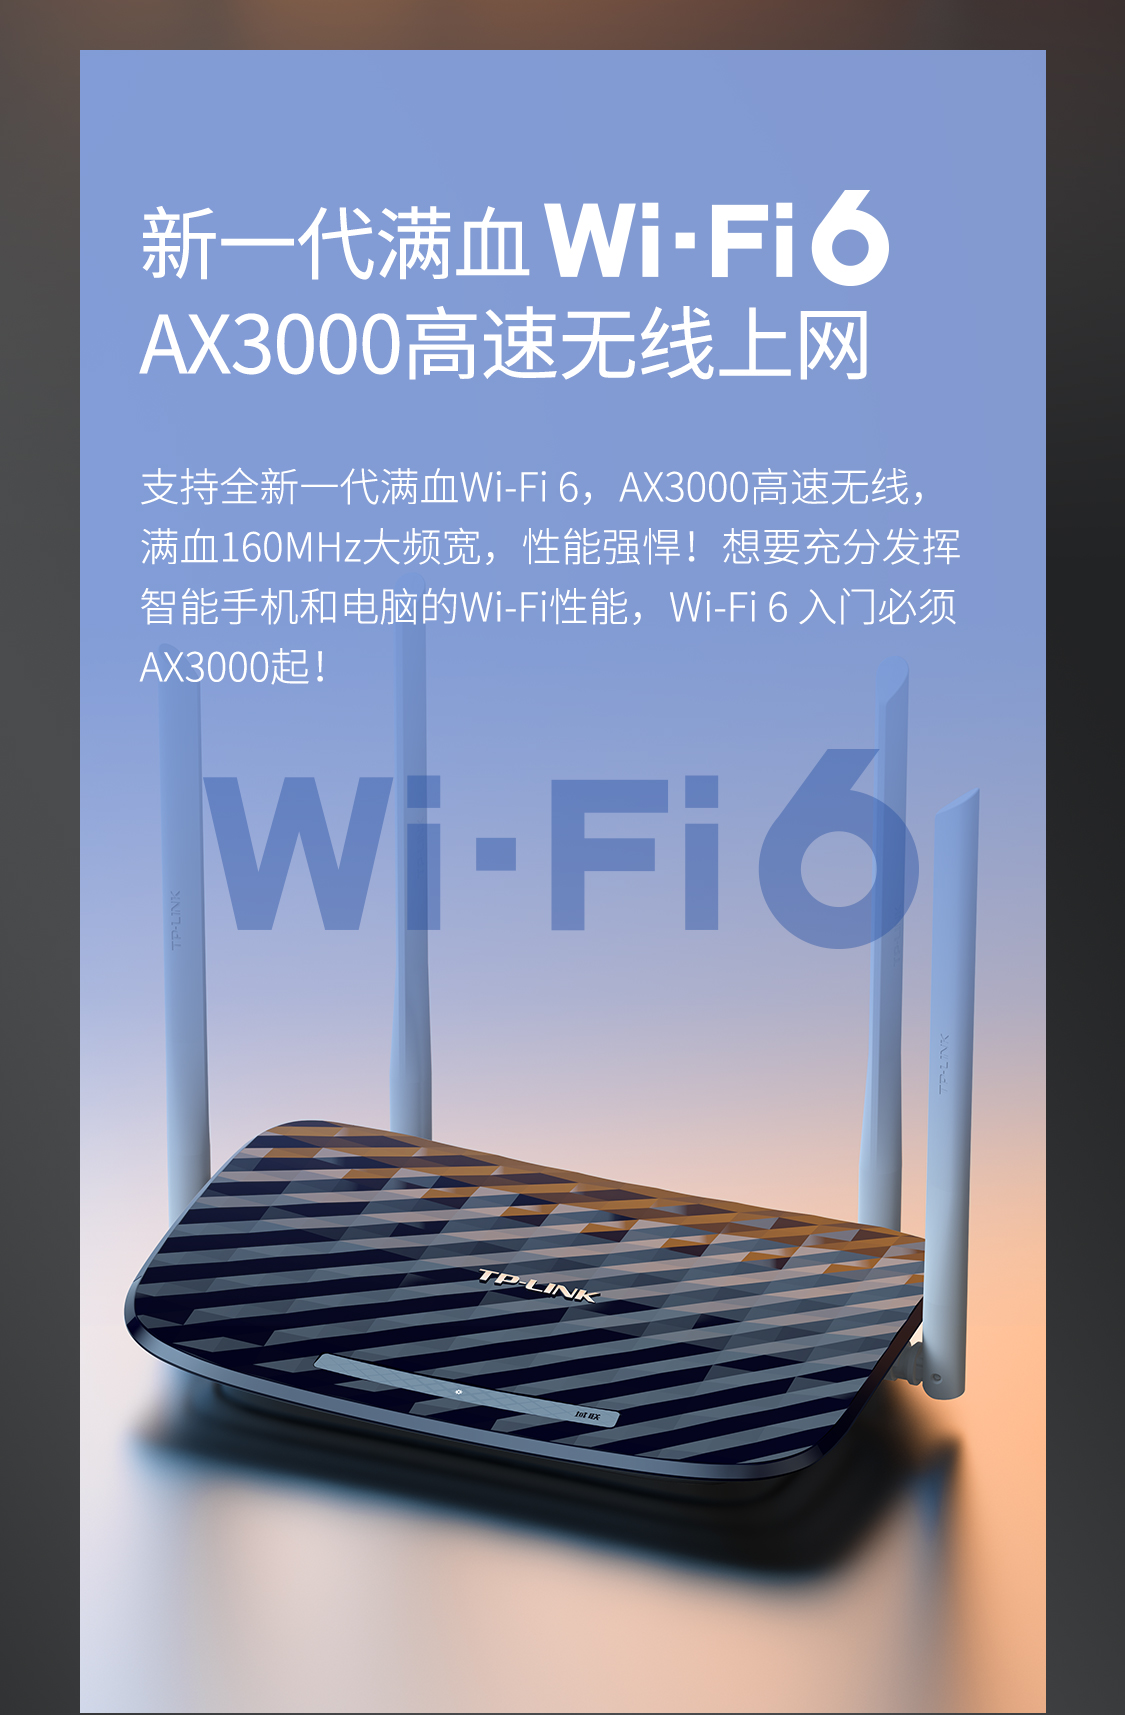 YLWR3000G易展版- AX3000双频千兆Wi-Fi 6无线路由器- TP-LINK官方网站